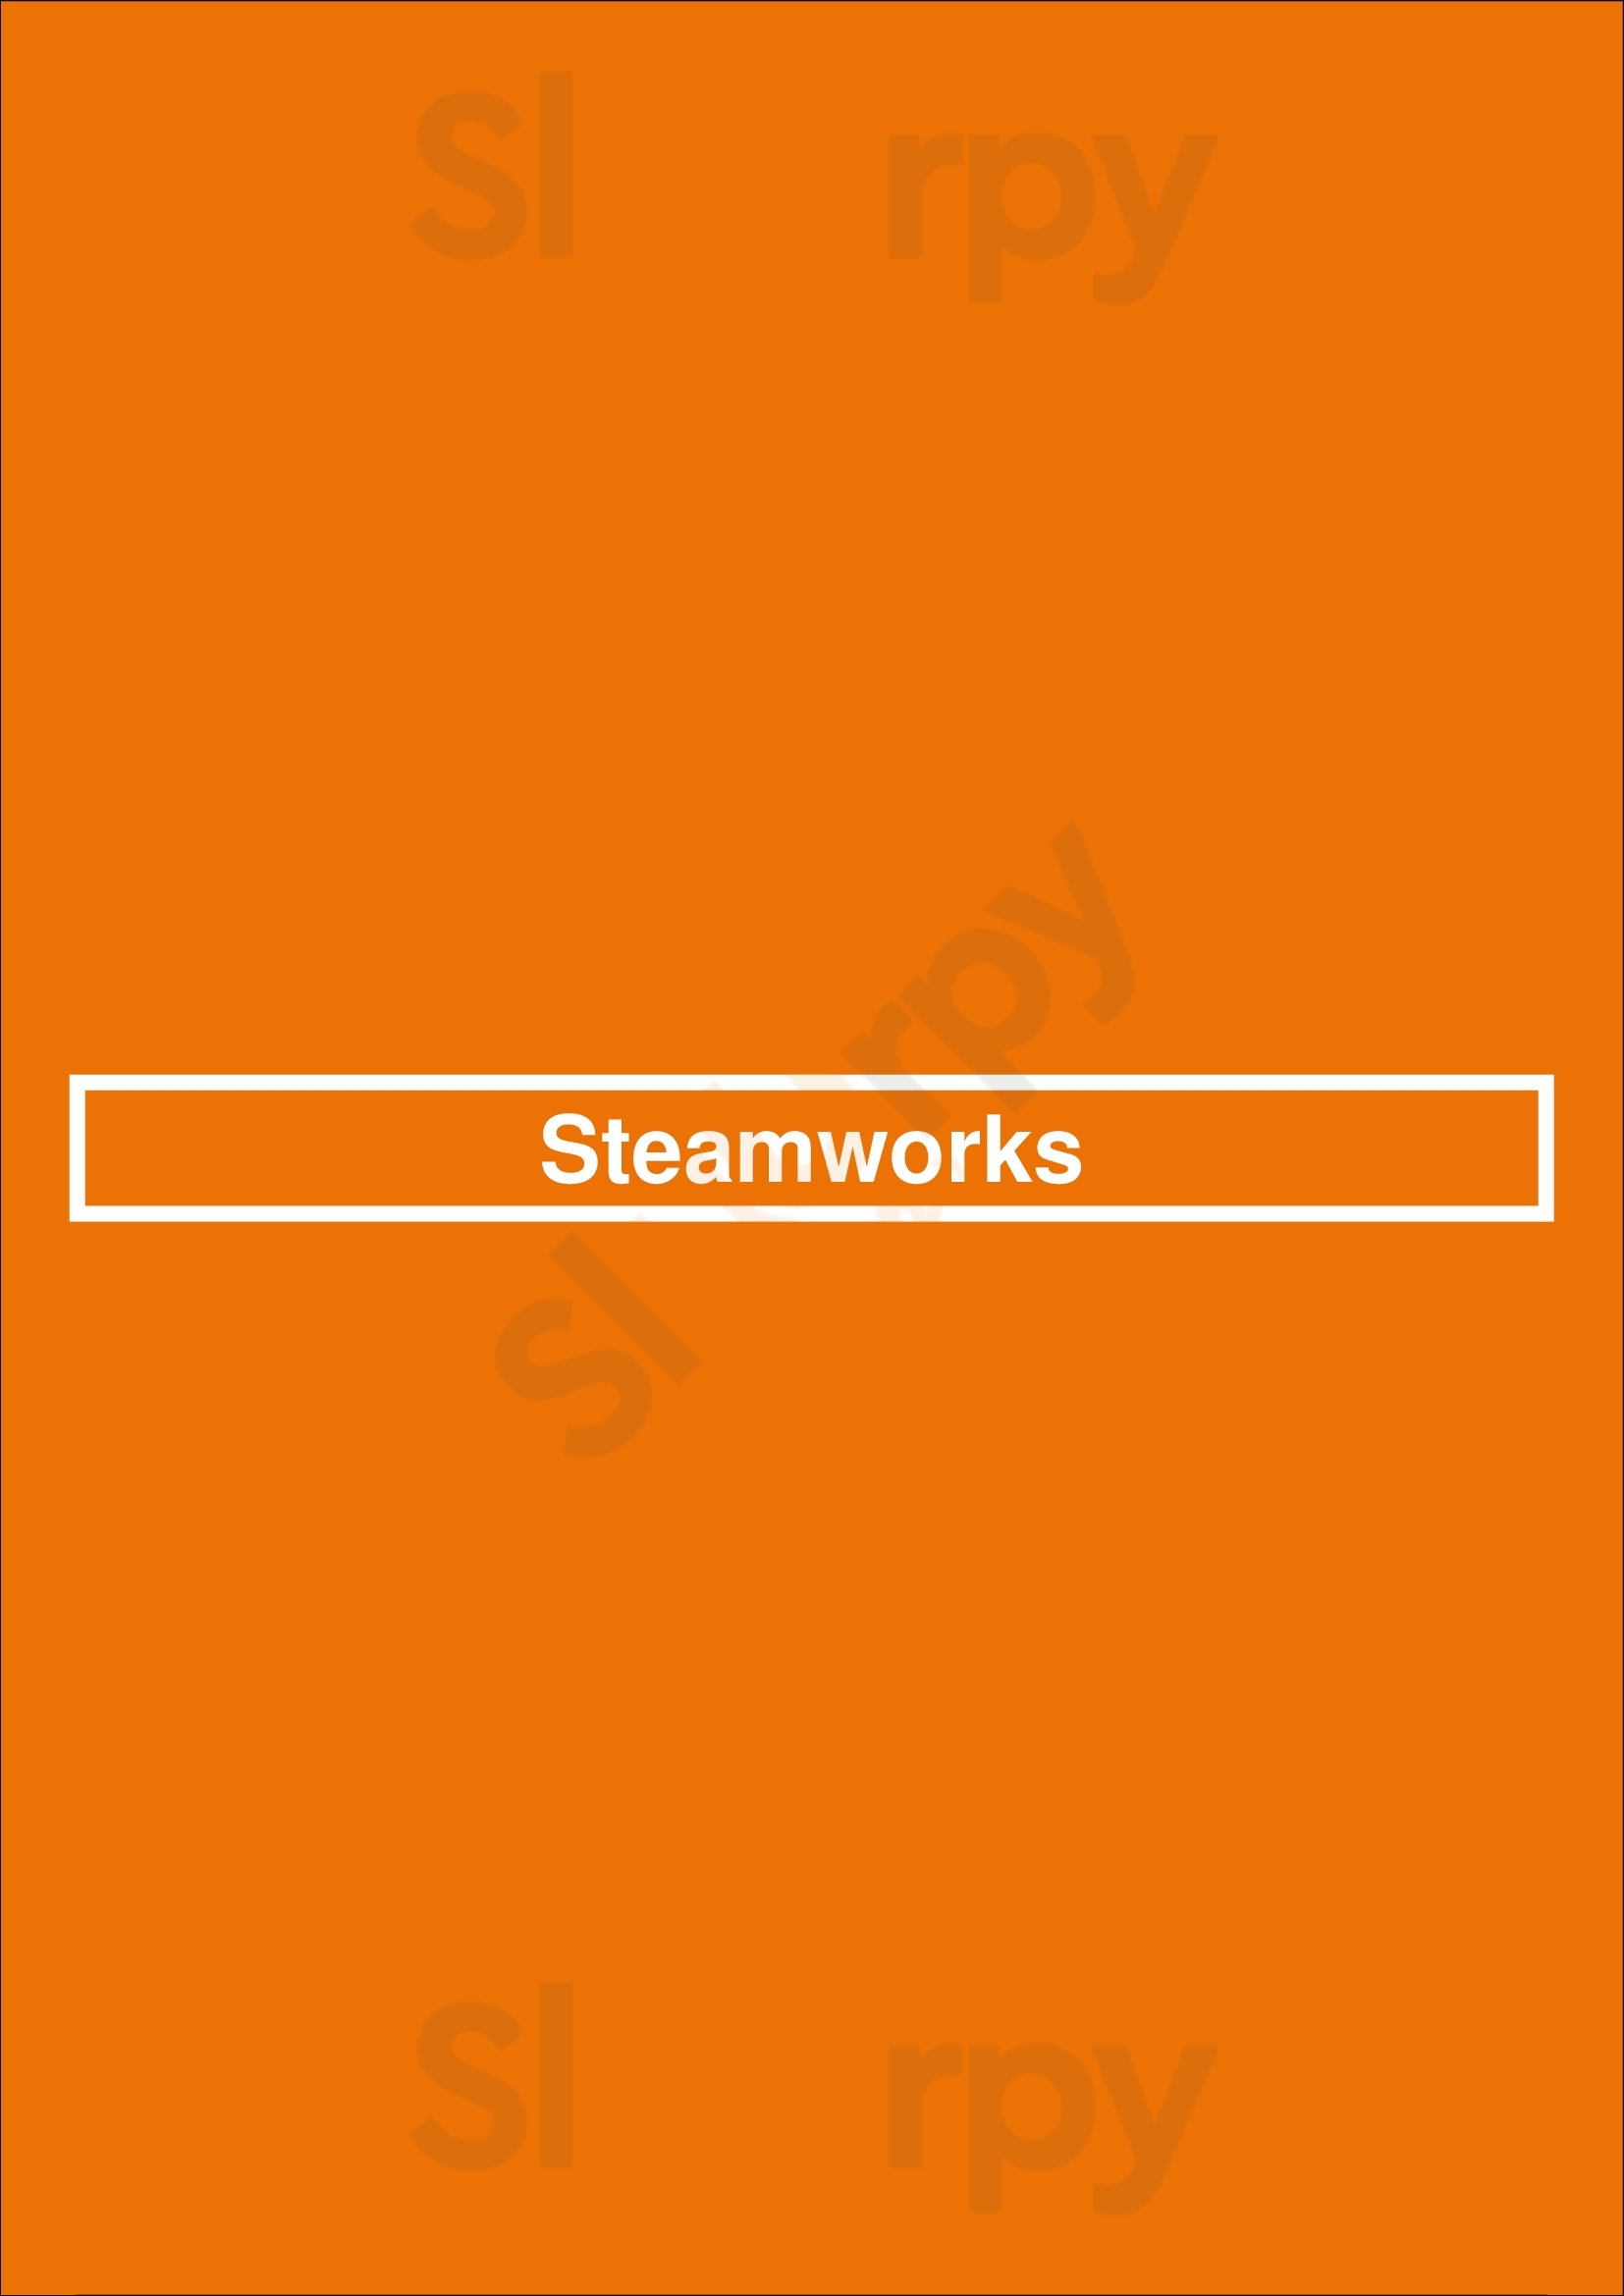 Steamworks Vancouver Menu - 1